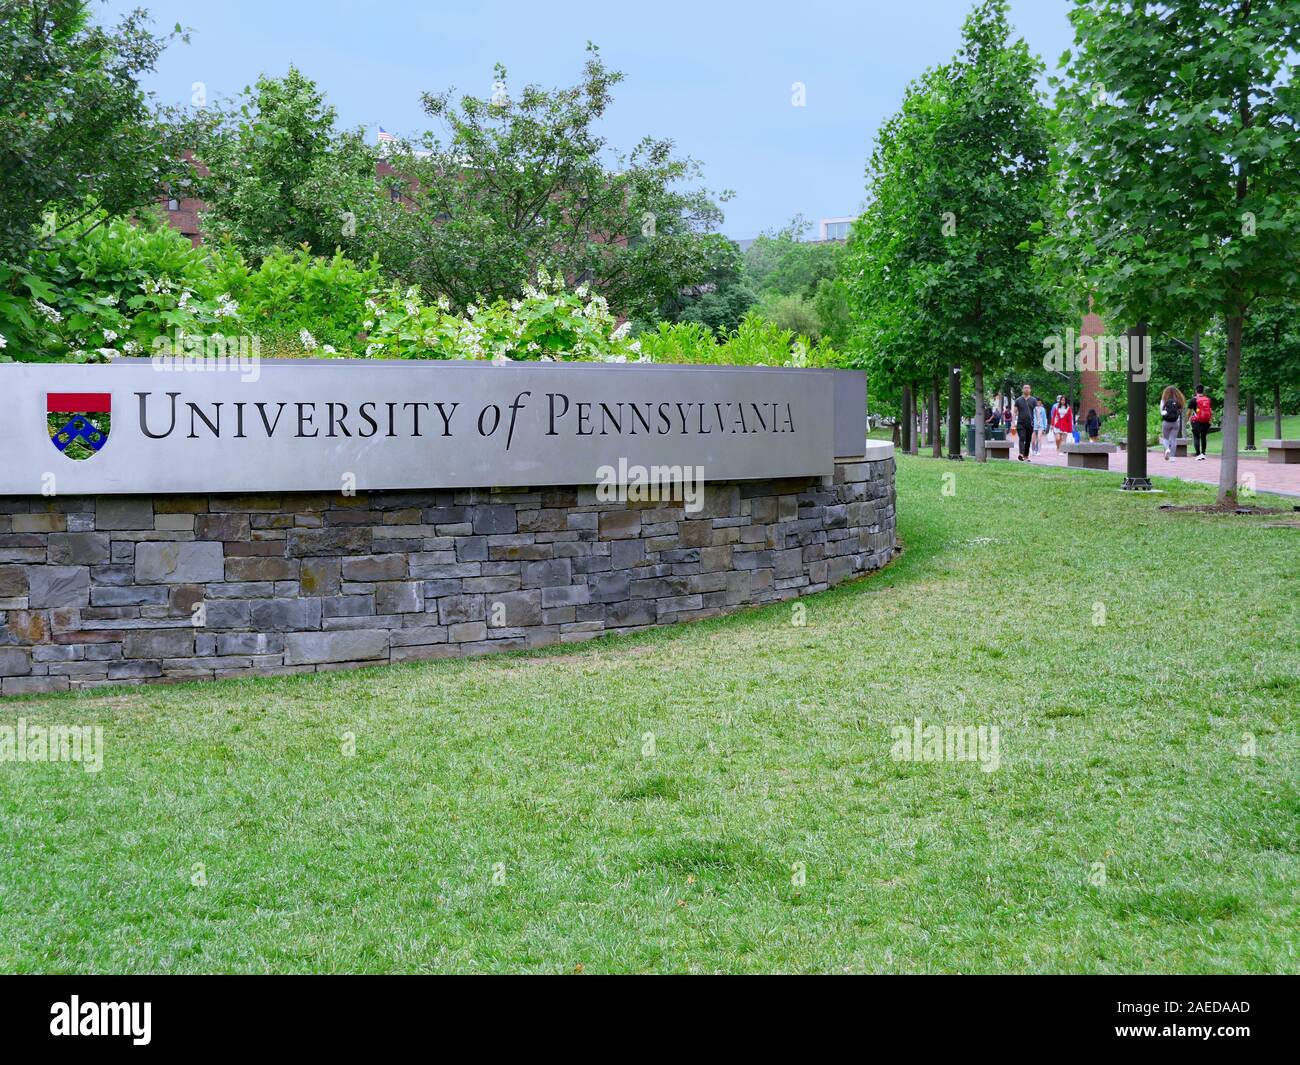 PHILADELPHIA - Mai 2019: Sogar von Ivy League Standards, dem Campus der Universität von Pennsylvania ist sehr grün und schattig, wie in diesem Blick entlang Lo gesehen Stockfoto